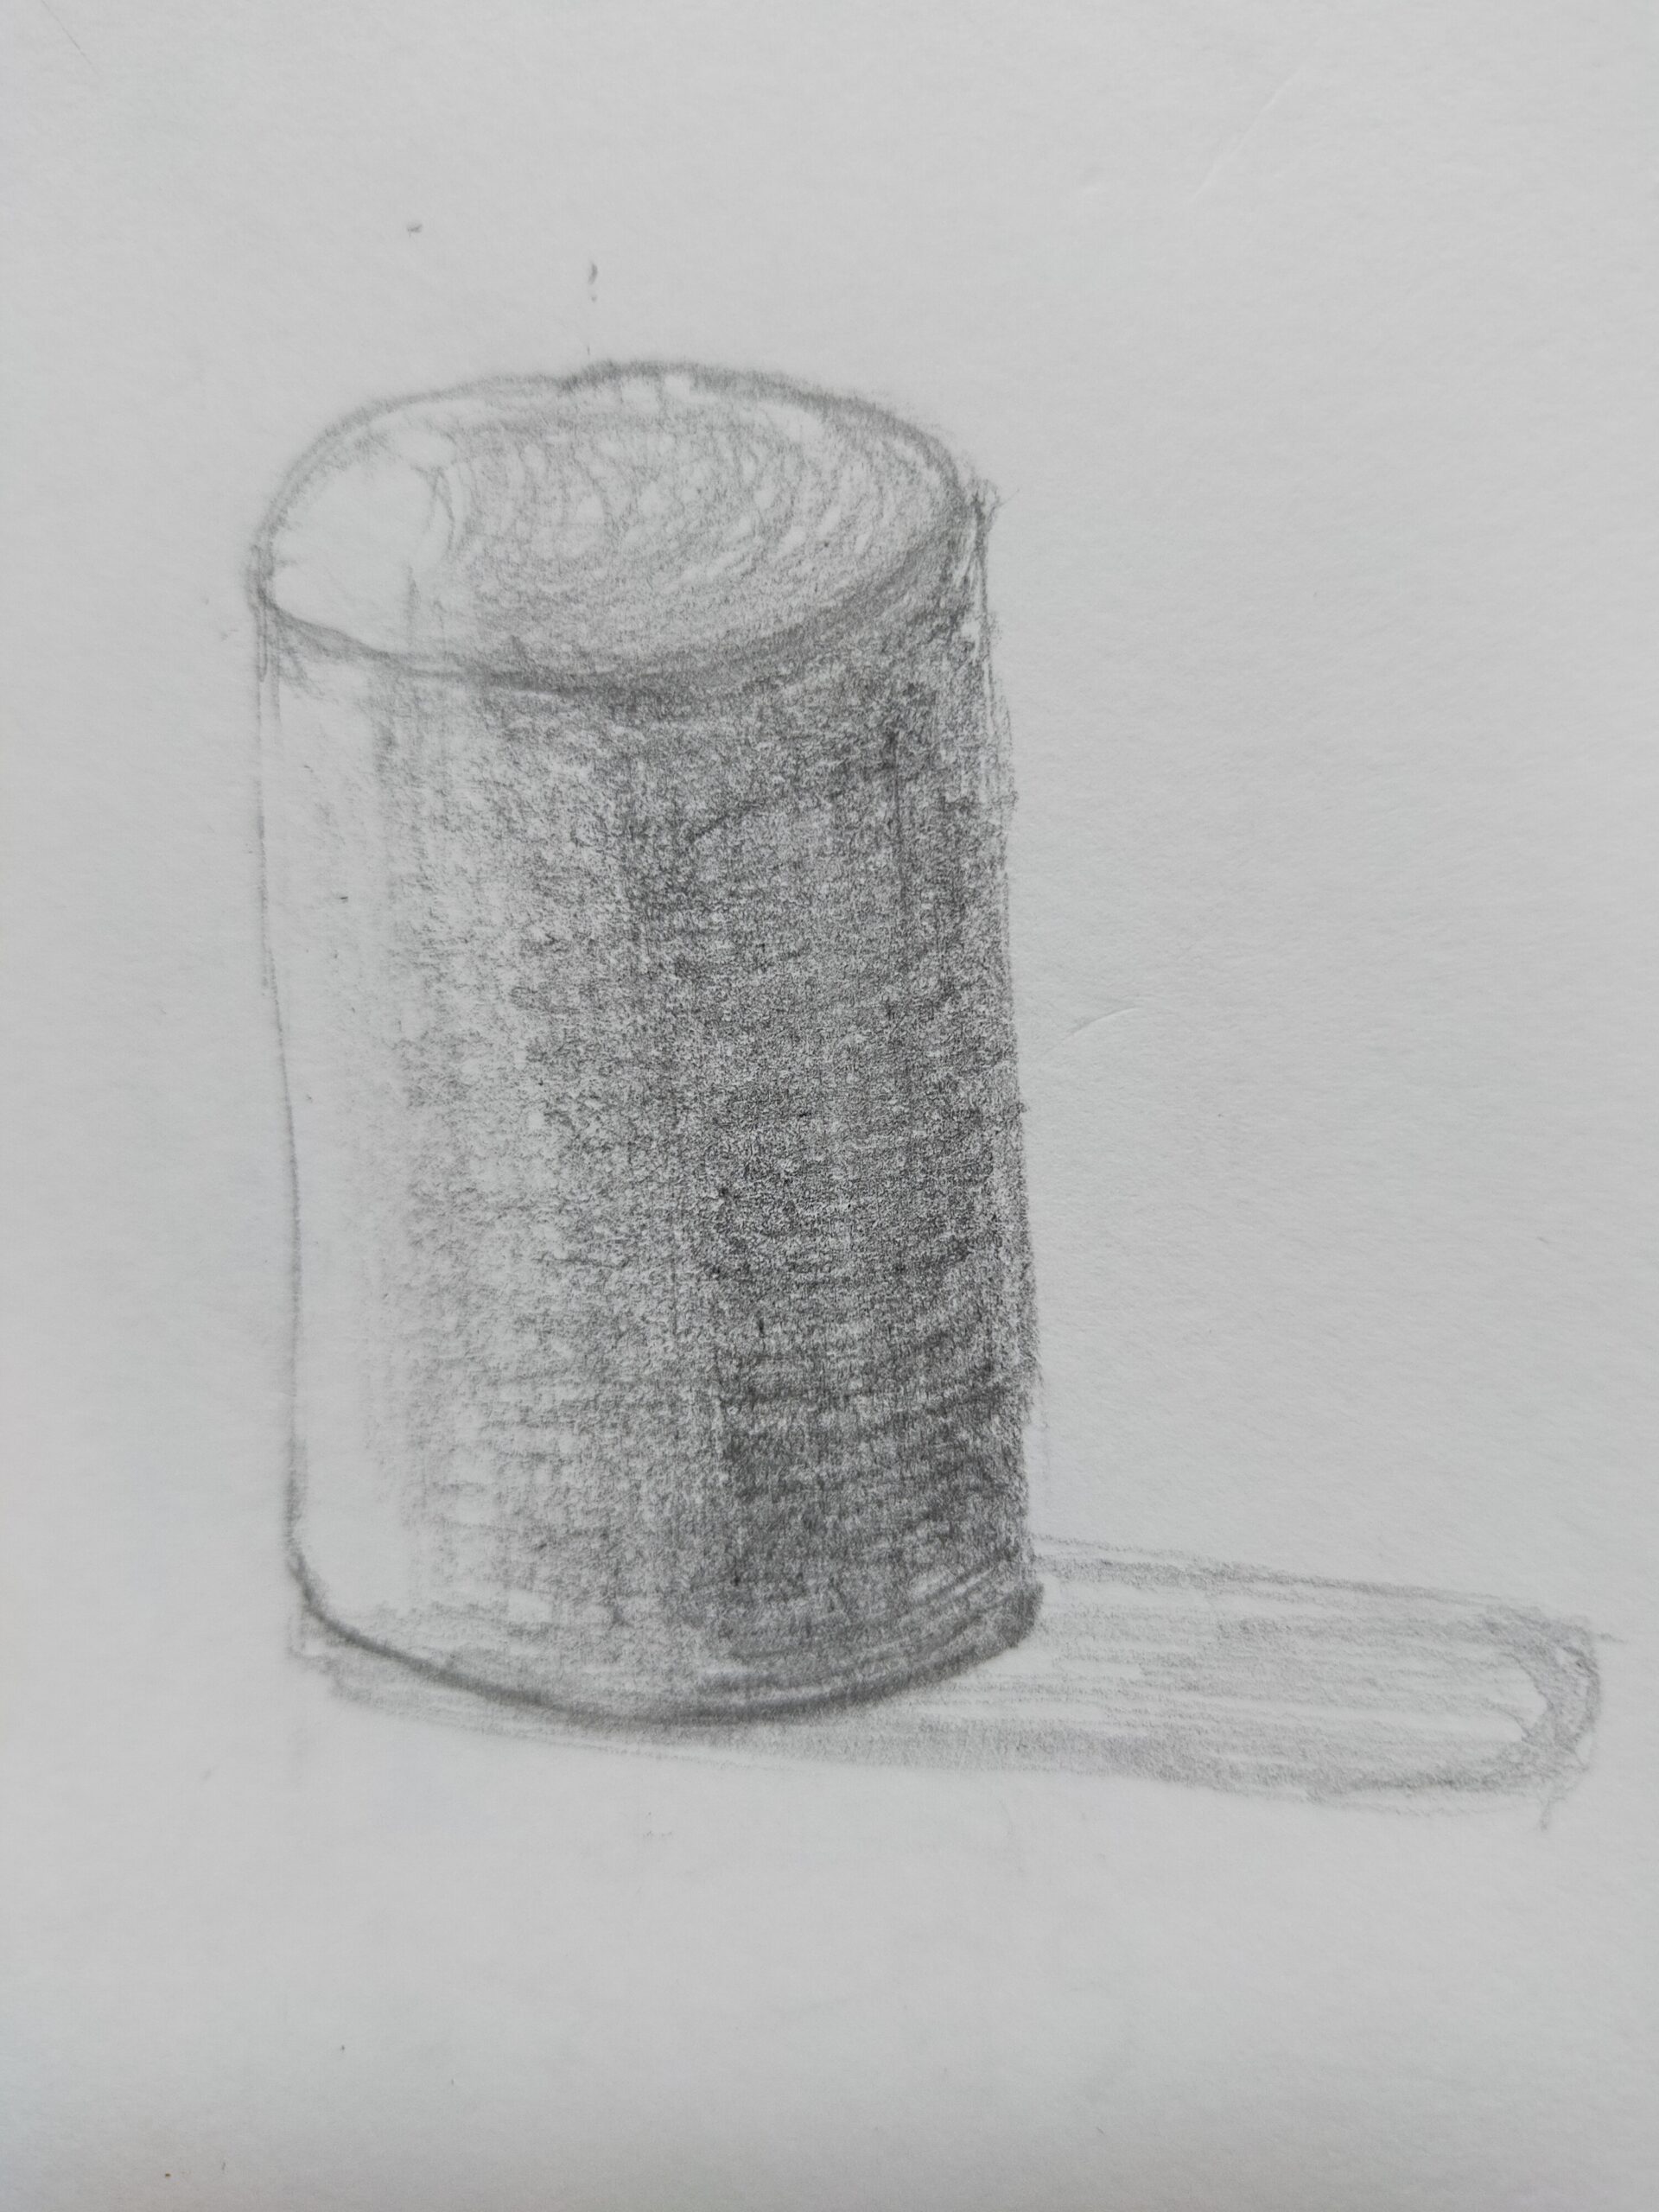 デッサン練習 円柱を描くコツをつかむ 書道ガールのイラスト練習